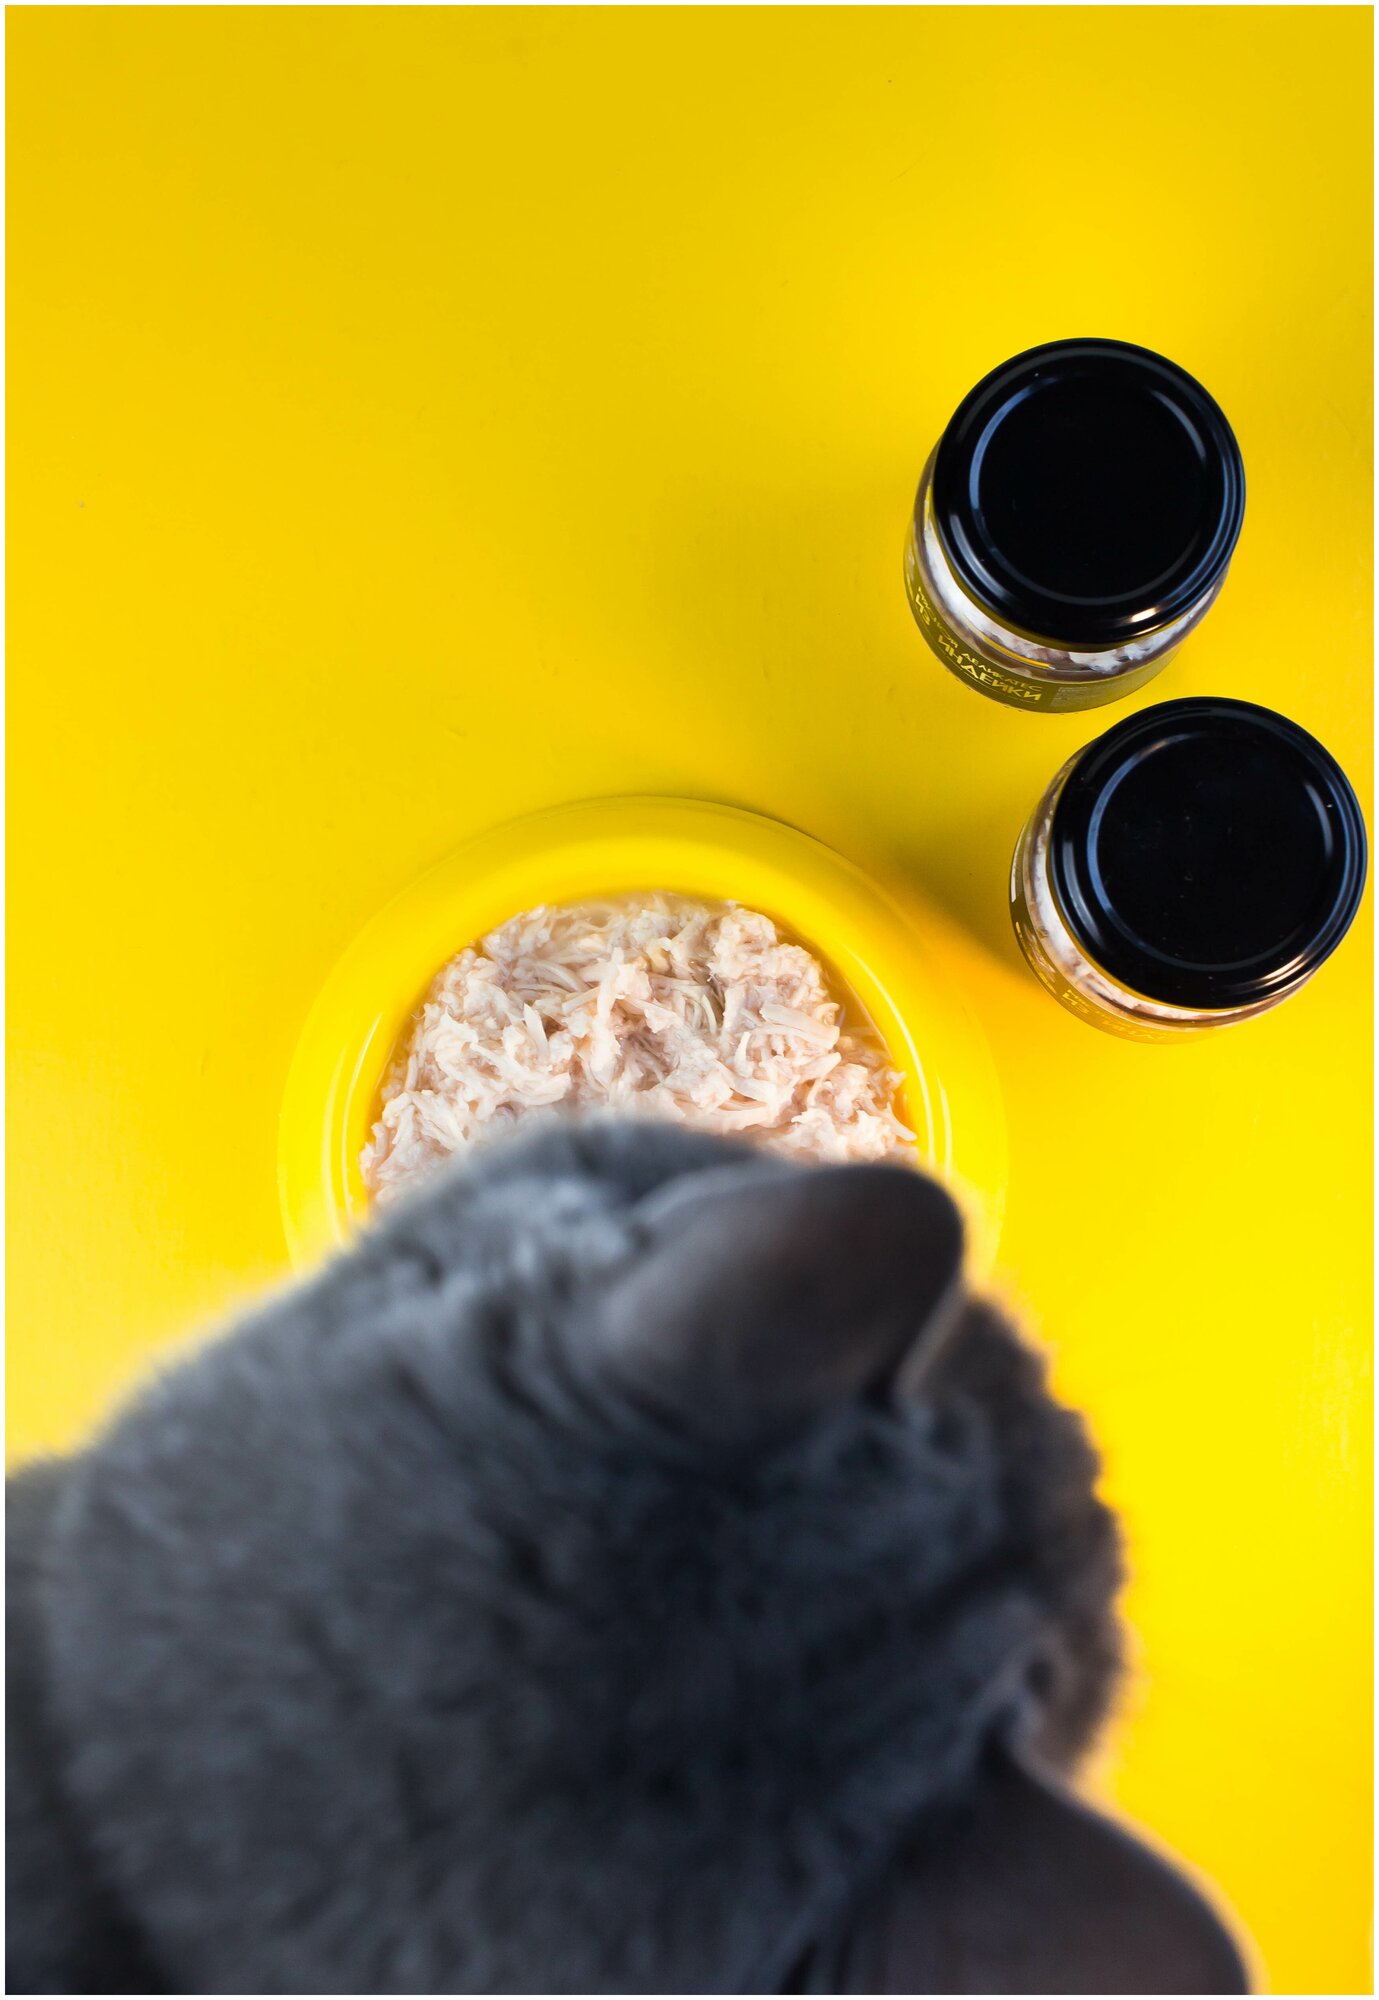 Мясной деликатес для кошек, котов и котят Lick Nose курица и индейка 2шт. х 110гр Премиум влажный корм, натуральный состав, Холистик - фотография № 2